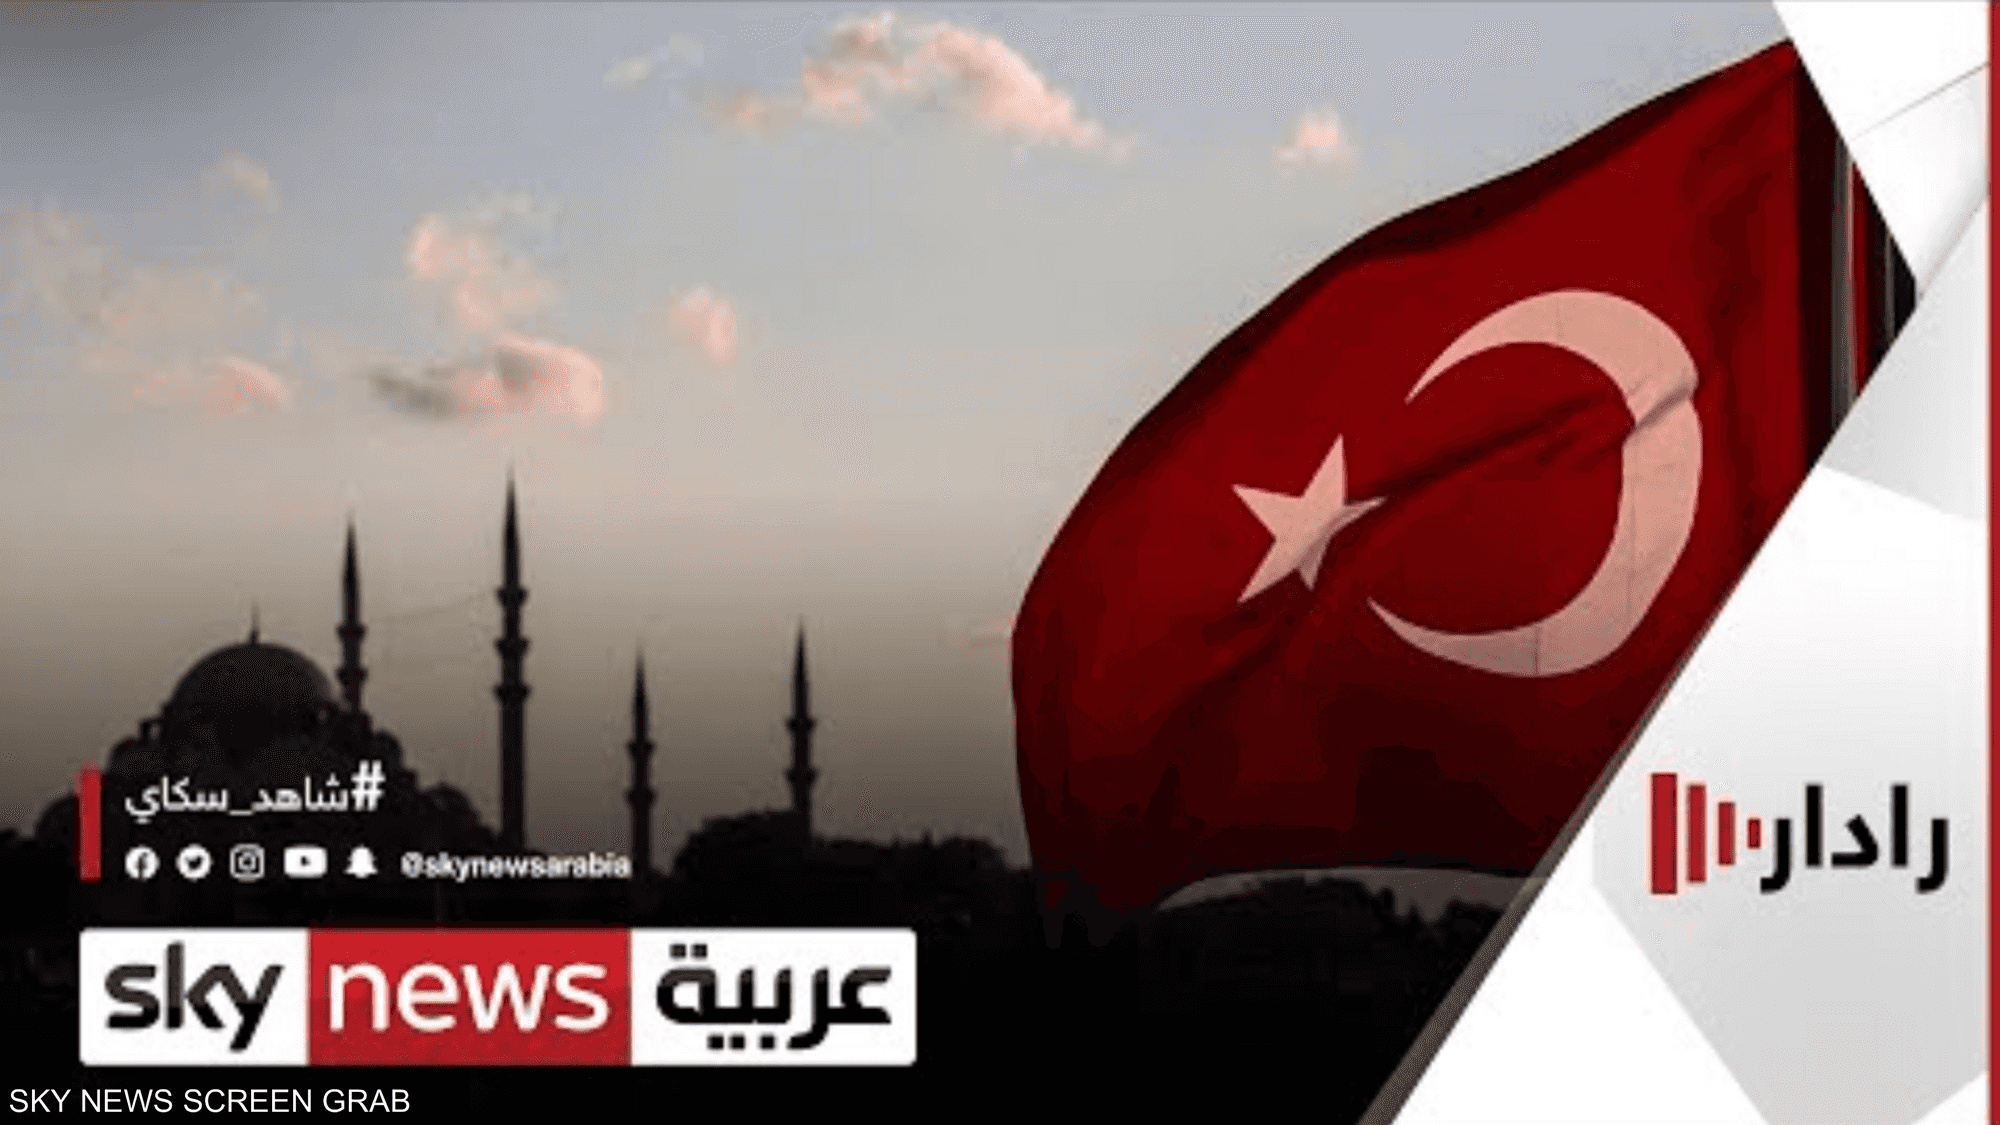 تنظيم الإخوان يتعهد بعدم المساس بأمن واستقرار تركيا